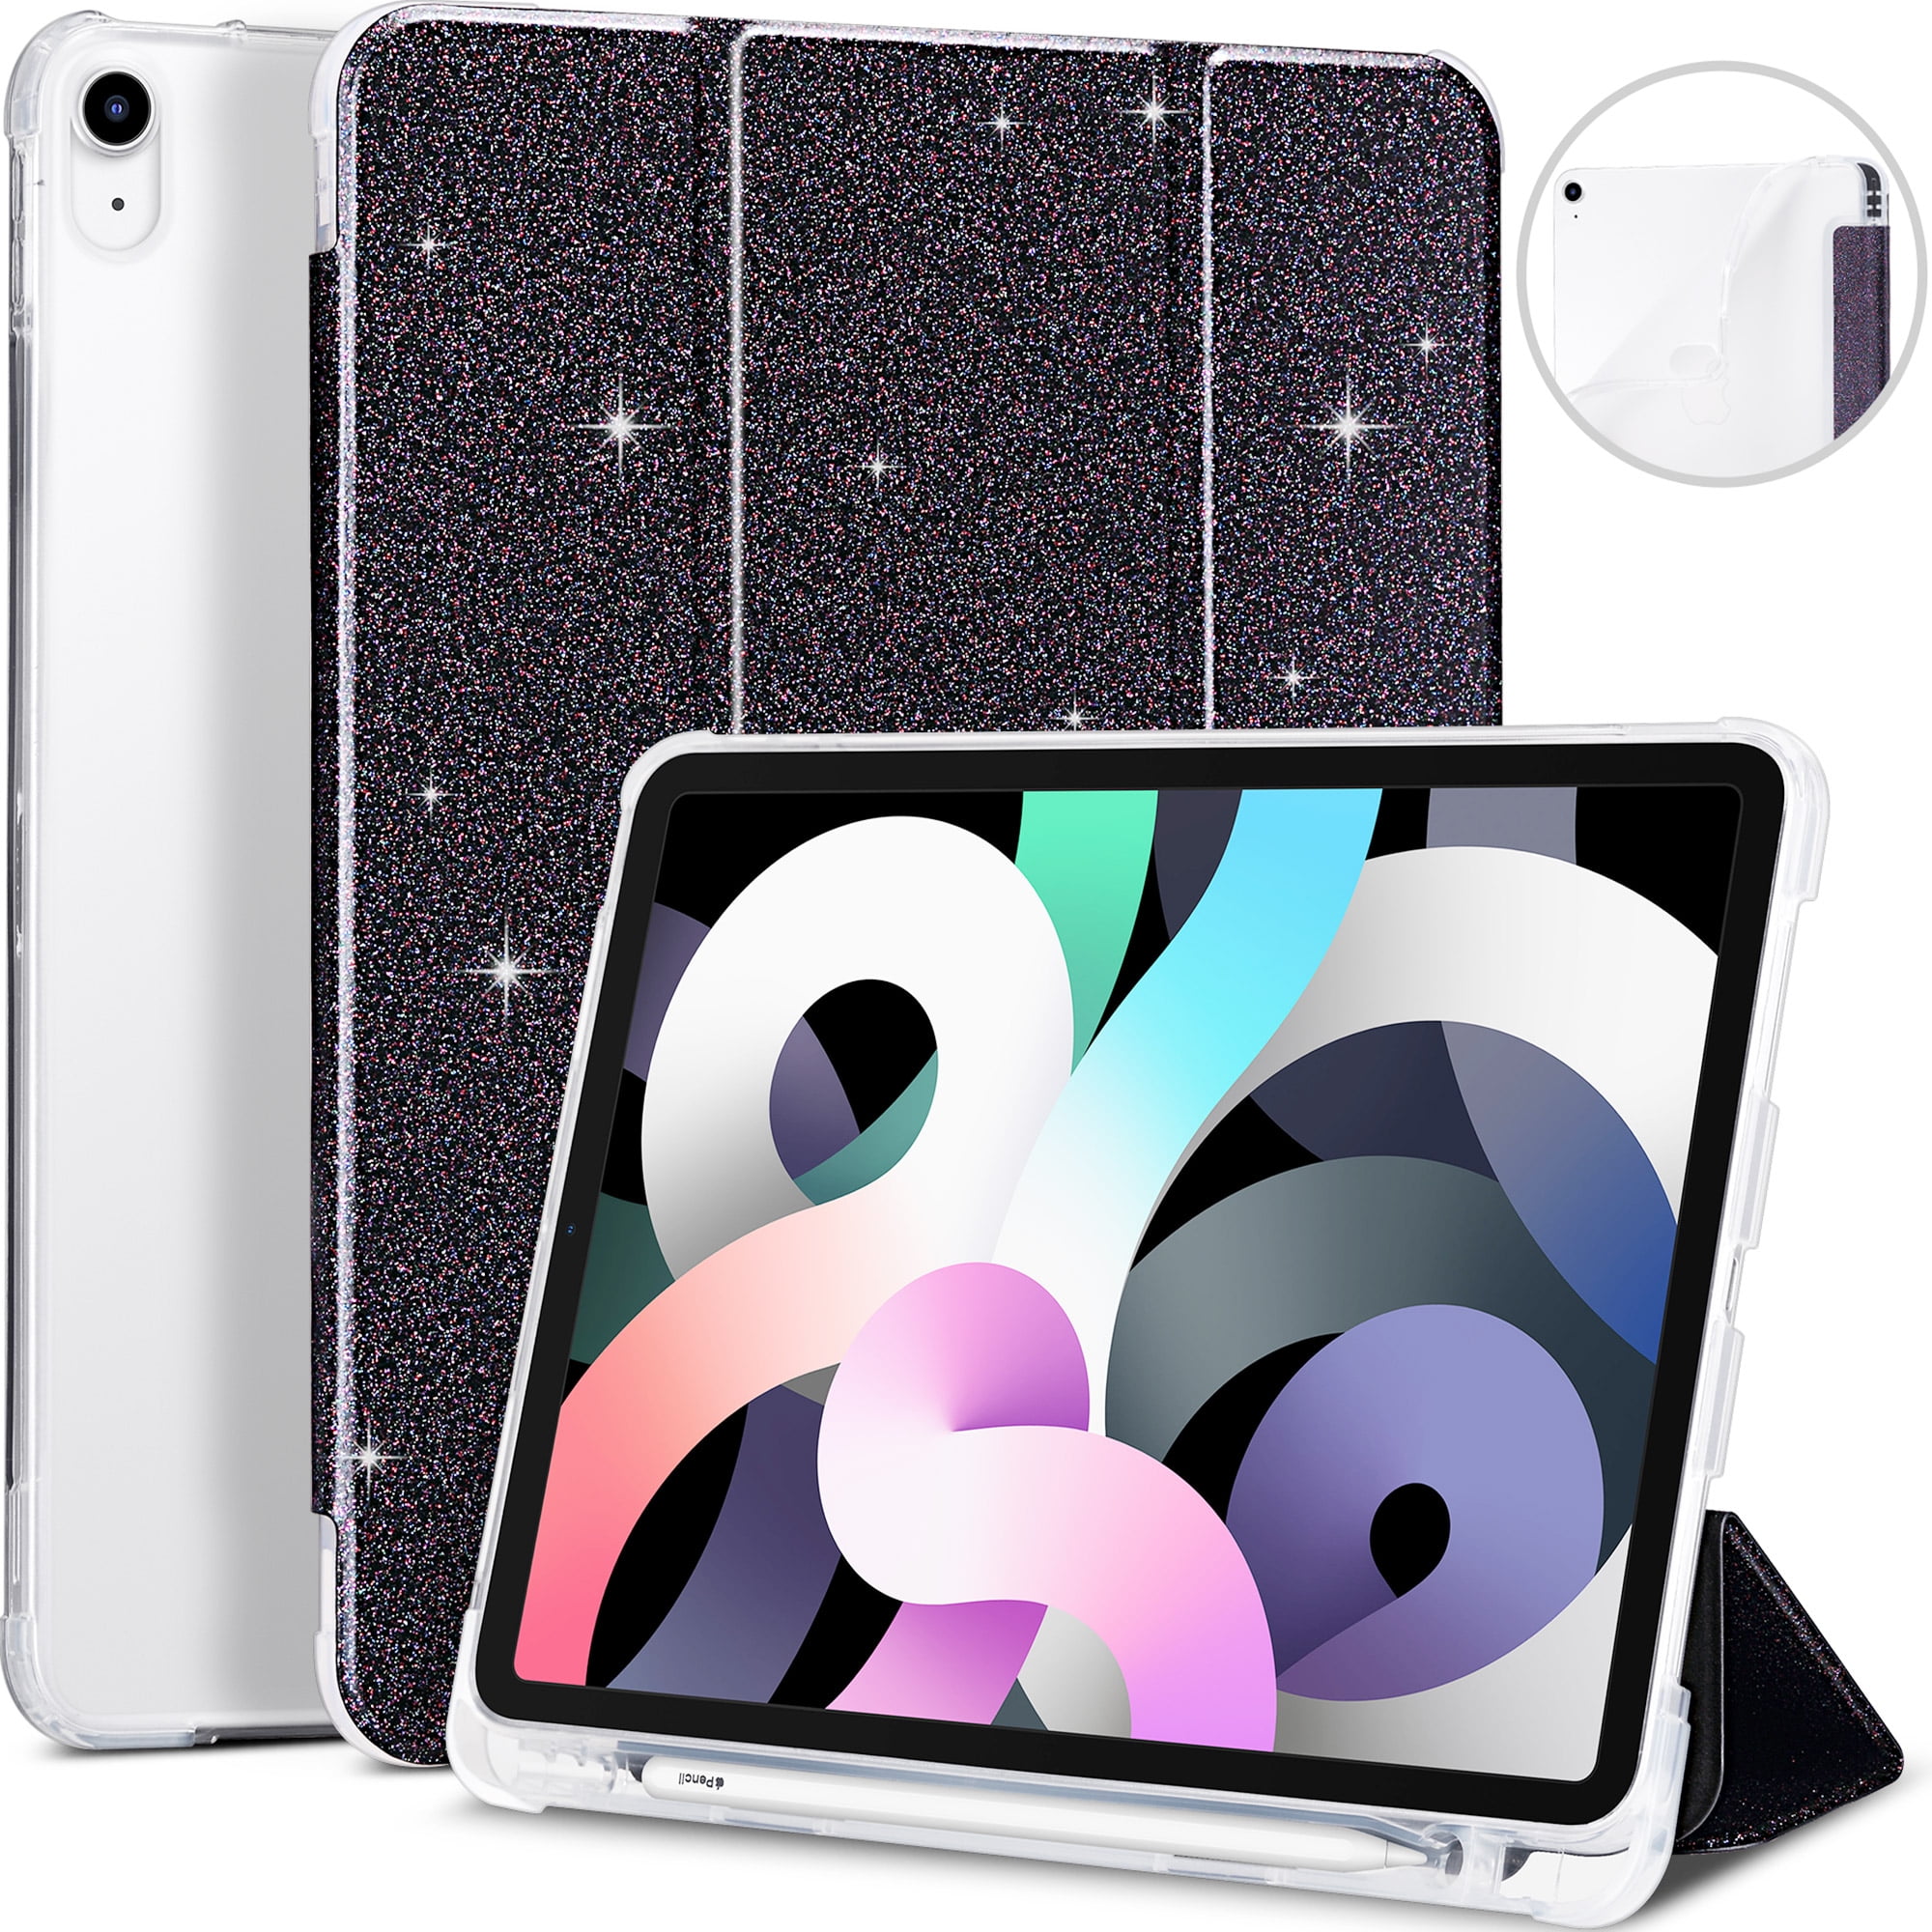 2020 Colorful Rainbow Vertical  Hard Back Case for iPad 6 5 9.7 iPad mini 4 5 iPad Pro 12.9 11 10.5 10.2 iPad Air 2 3 4 iPad Air